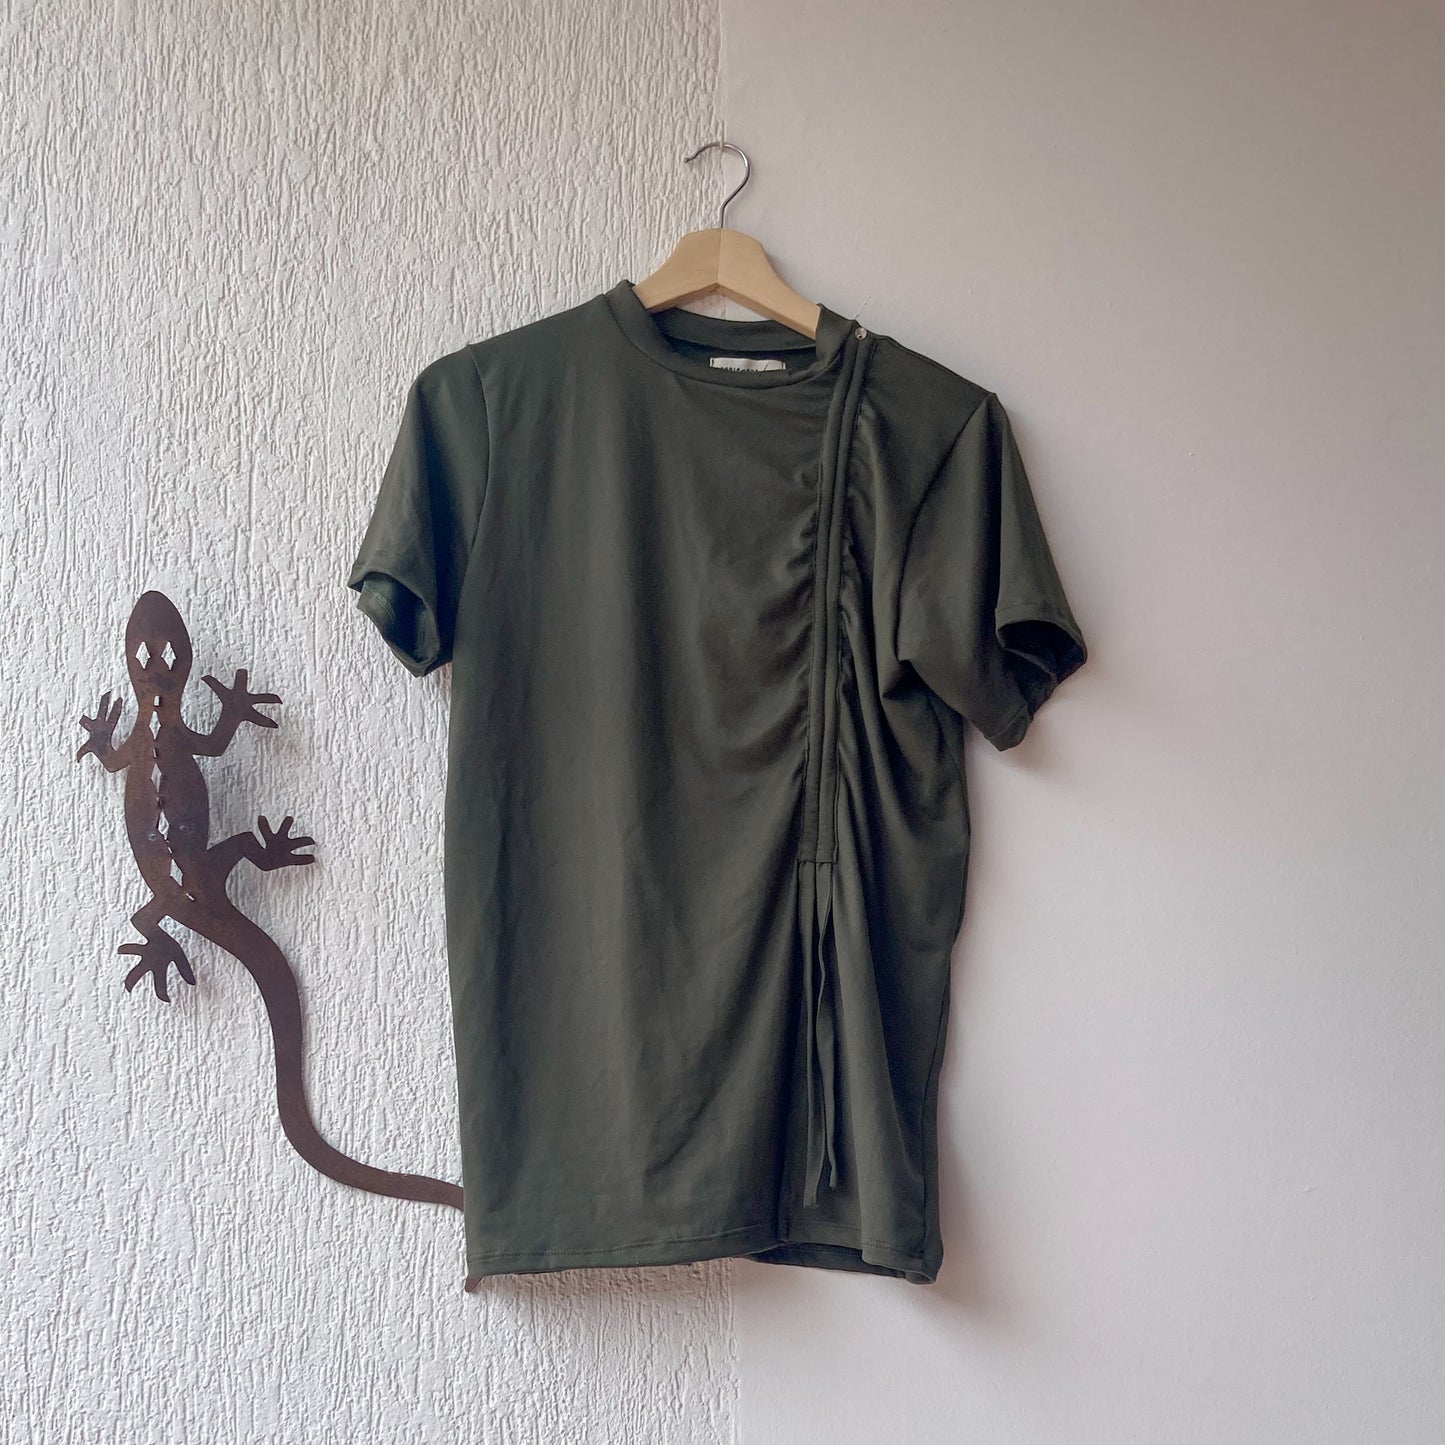 Camiseta verde oliva musita, talle largo con detalle de  fruncido en el costado. 100% Colombiana